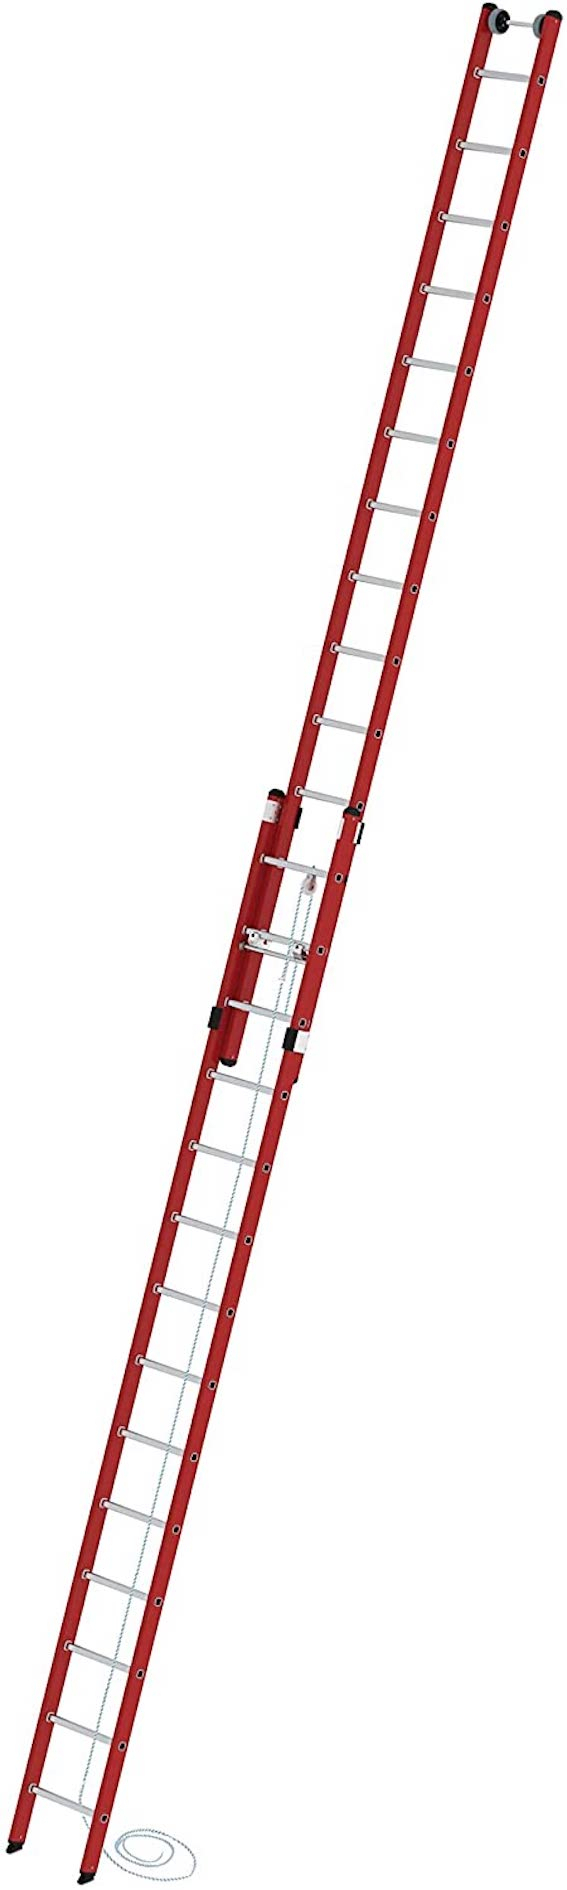 Kunststoff-Seilzugleiter, 2-teilig, 2x14 Sprossen/Stufen